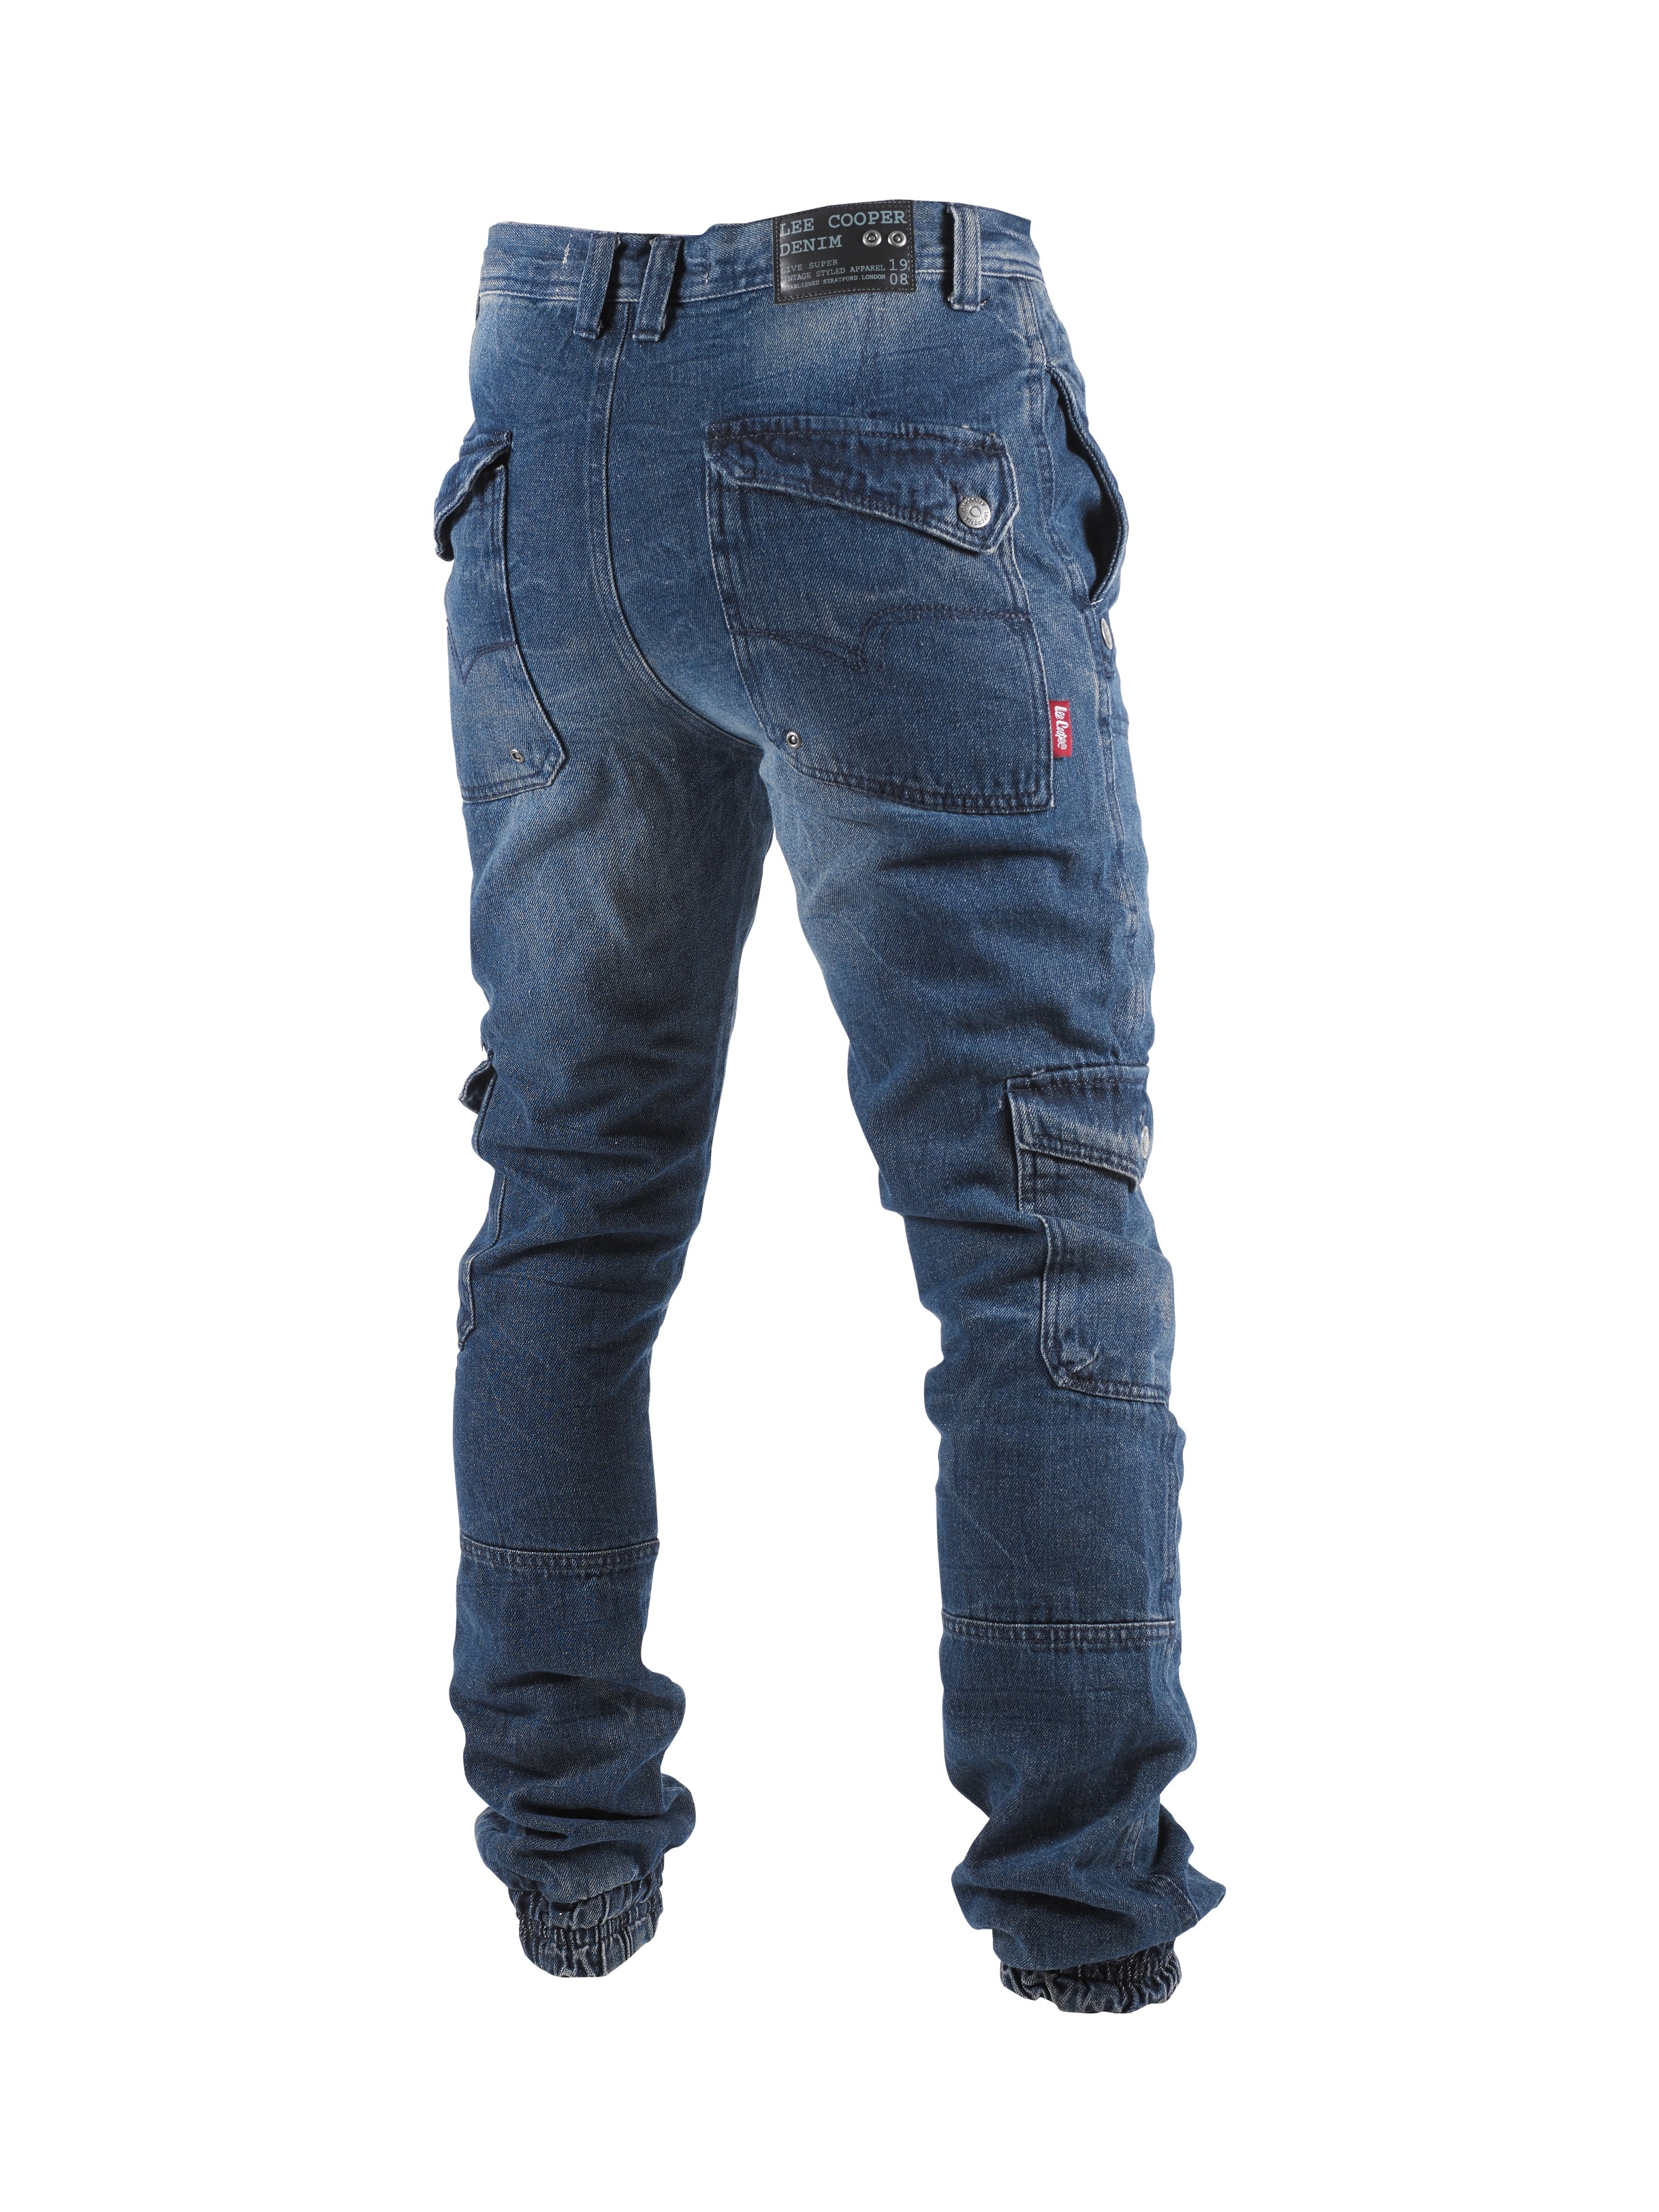 lee cooper skinny jeans mens